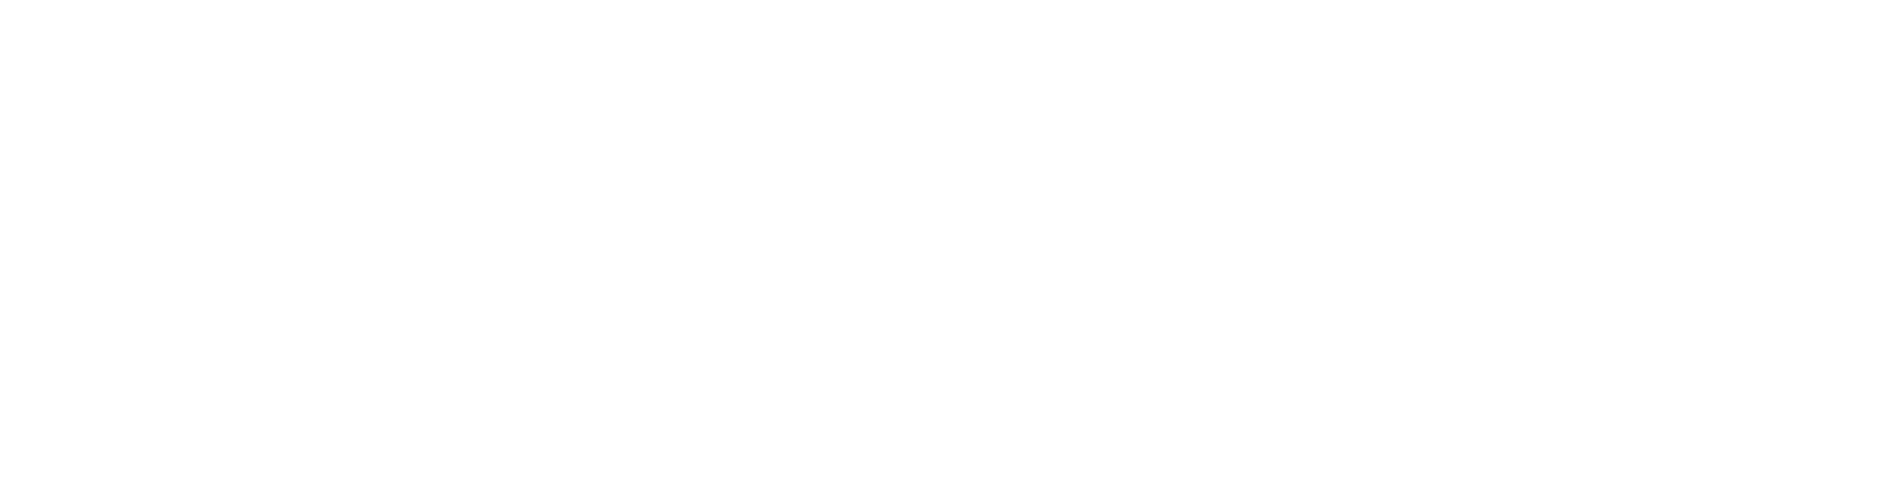 client-happy2.png